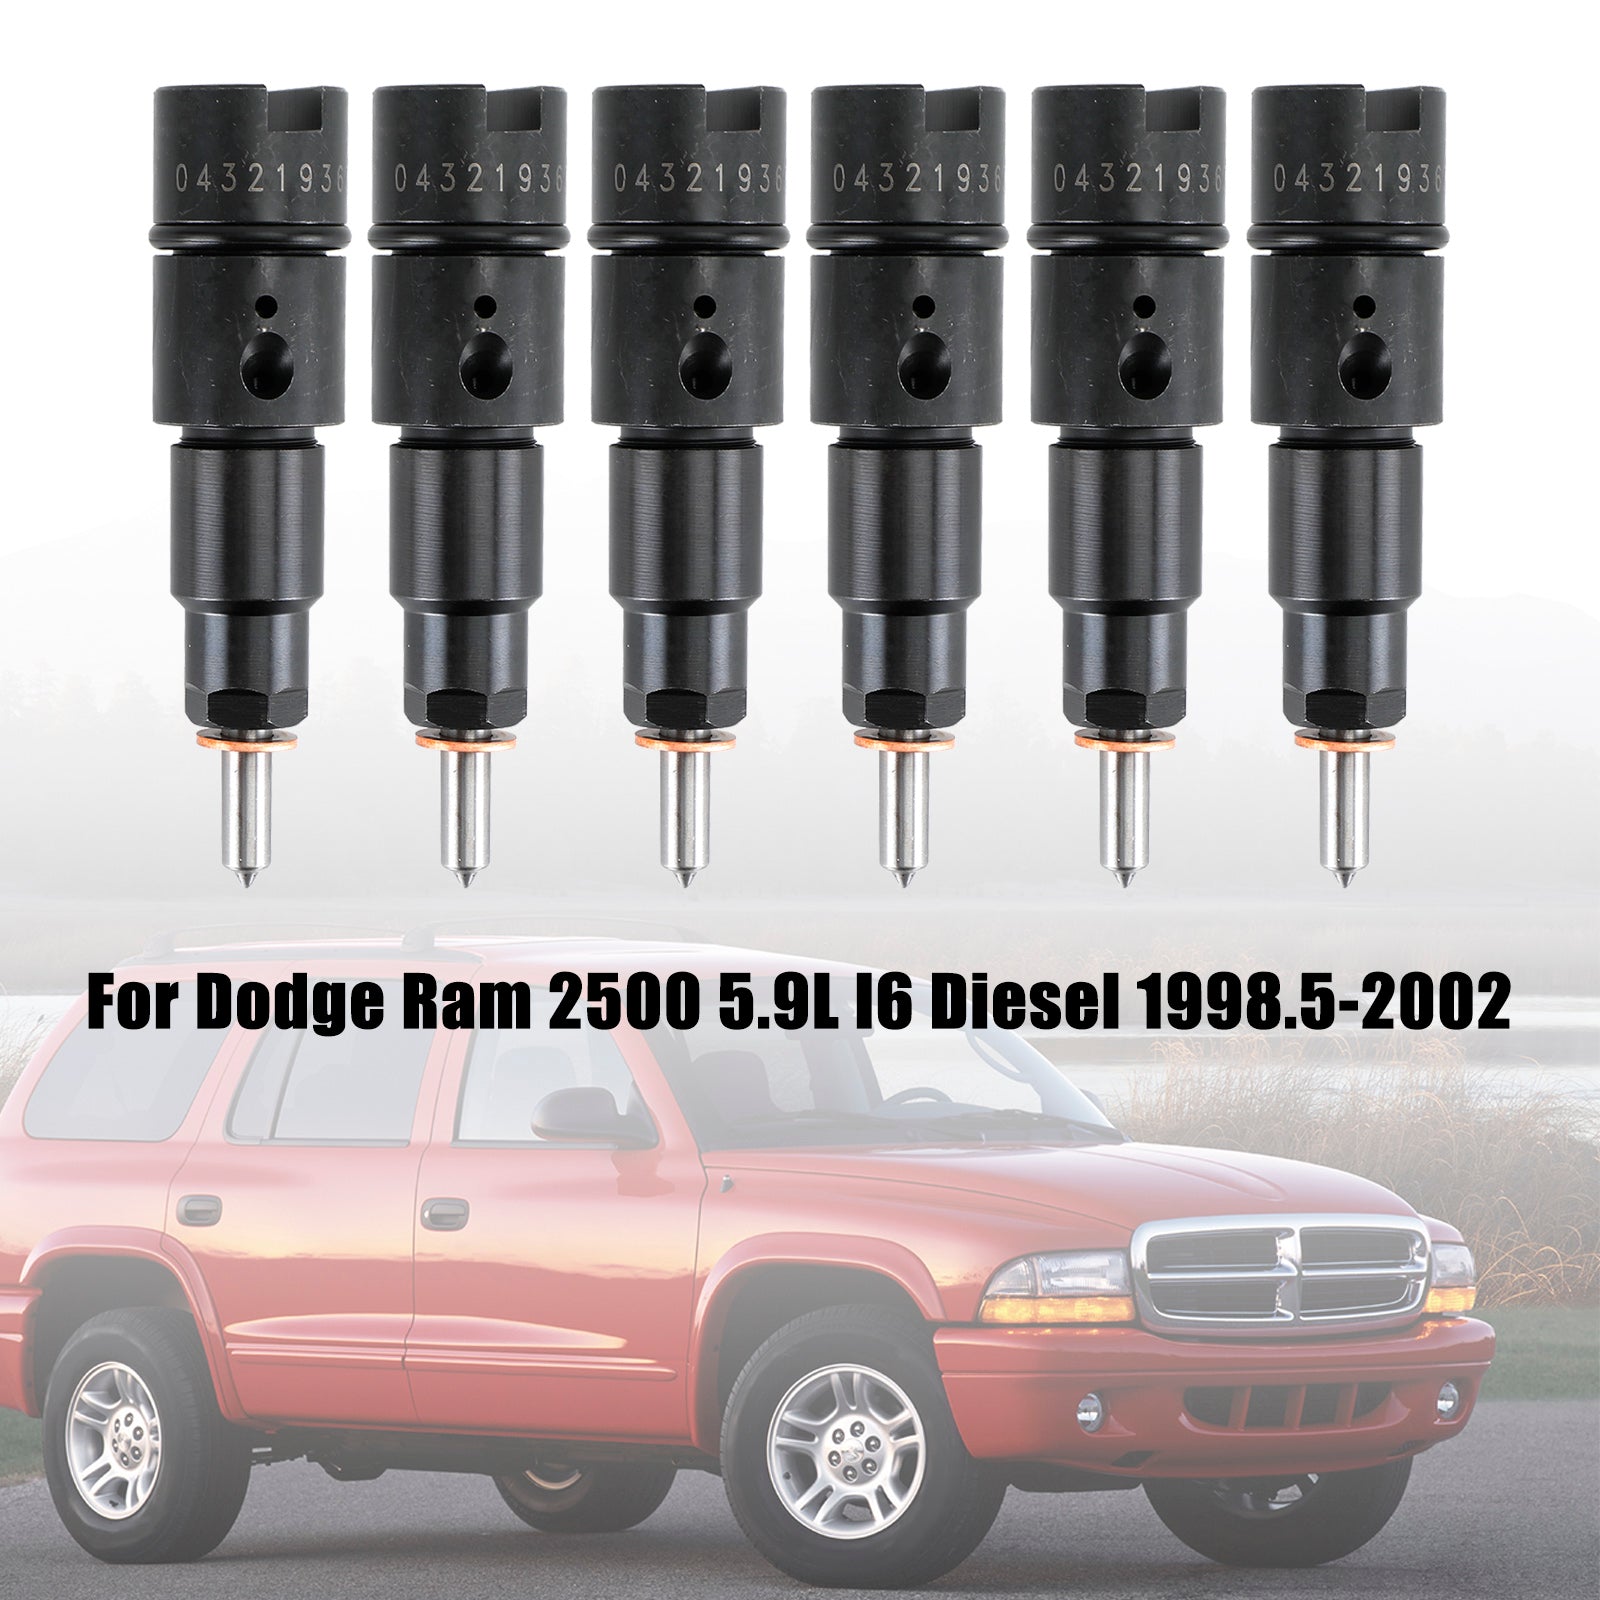 1998-2002 Dodge Cummins 5.9L 40-50 HP 6 injecteurs de carburant 0432193635 RV275 Fedex Express